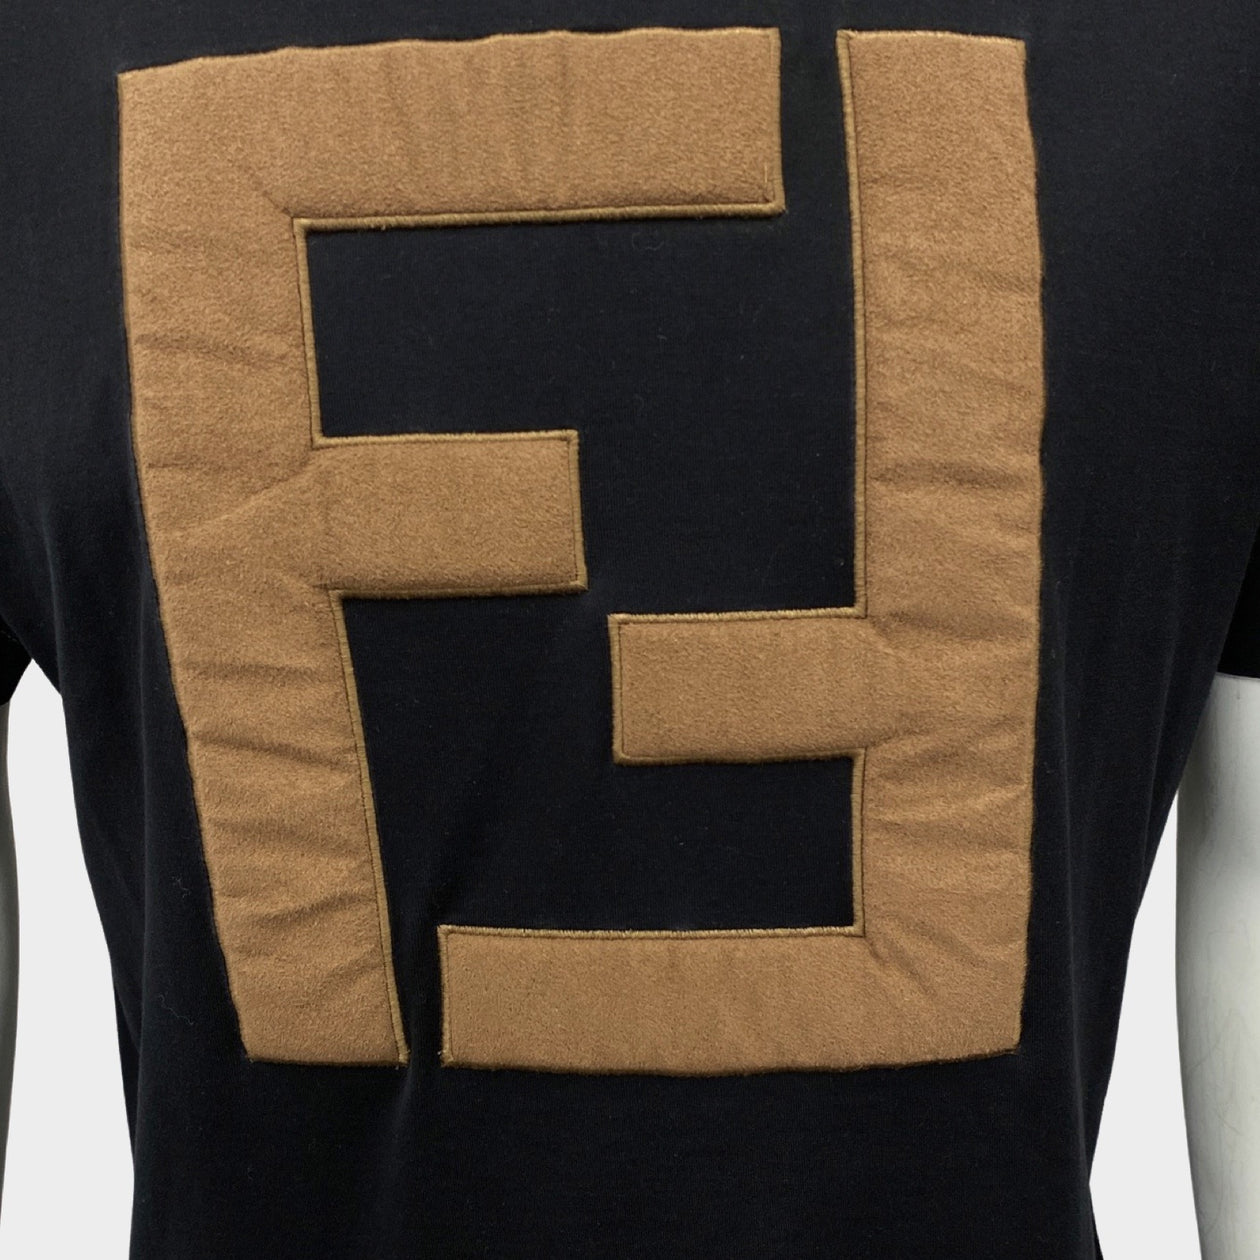 FENDI - Logo-Print Cotton-Jersey T-Shirt - Brown Fendi